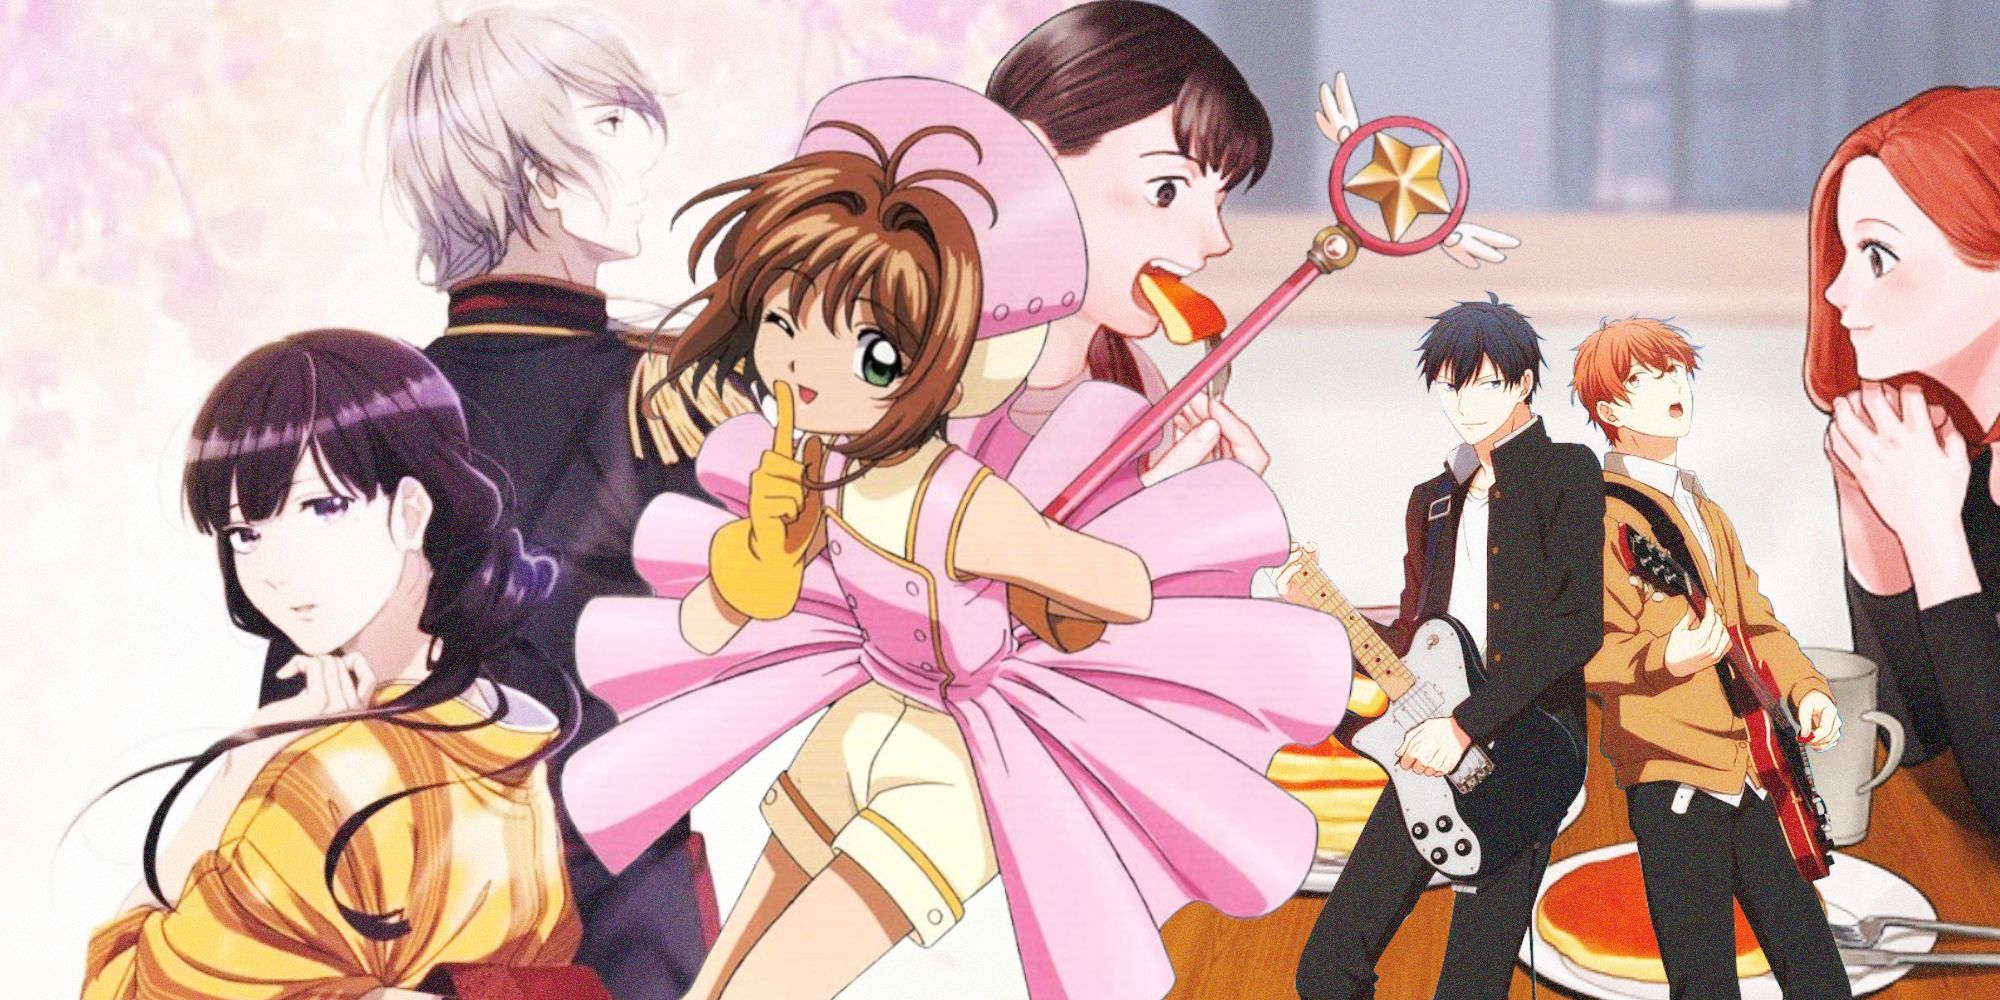 Shojo and Josei Anime and Manga